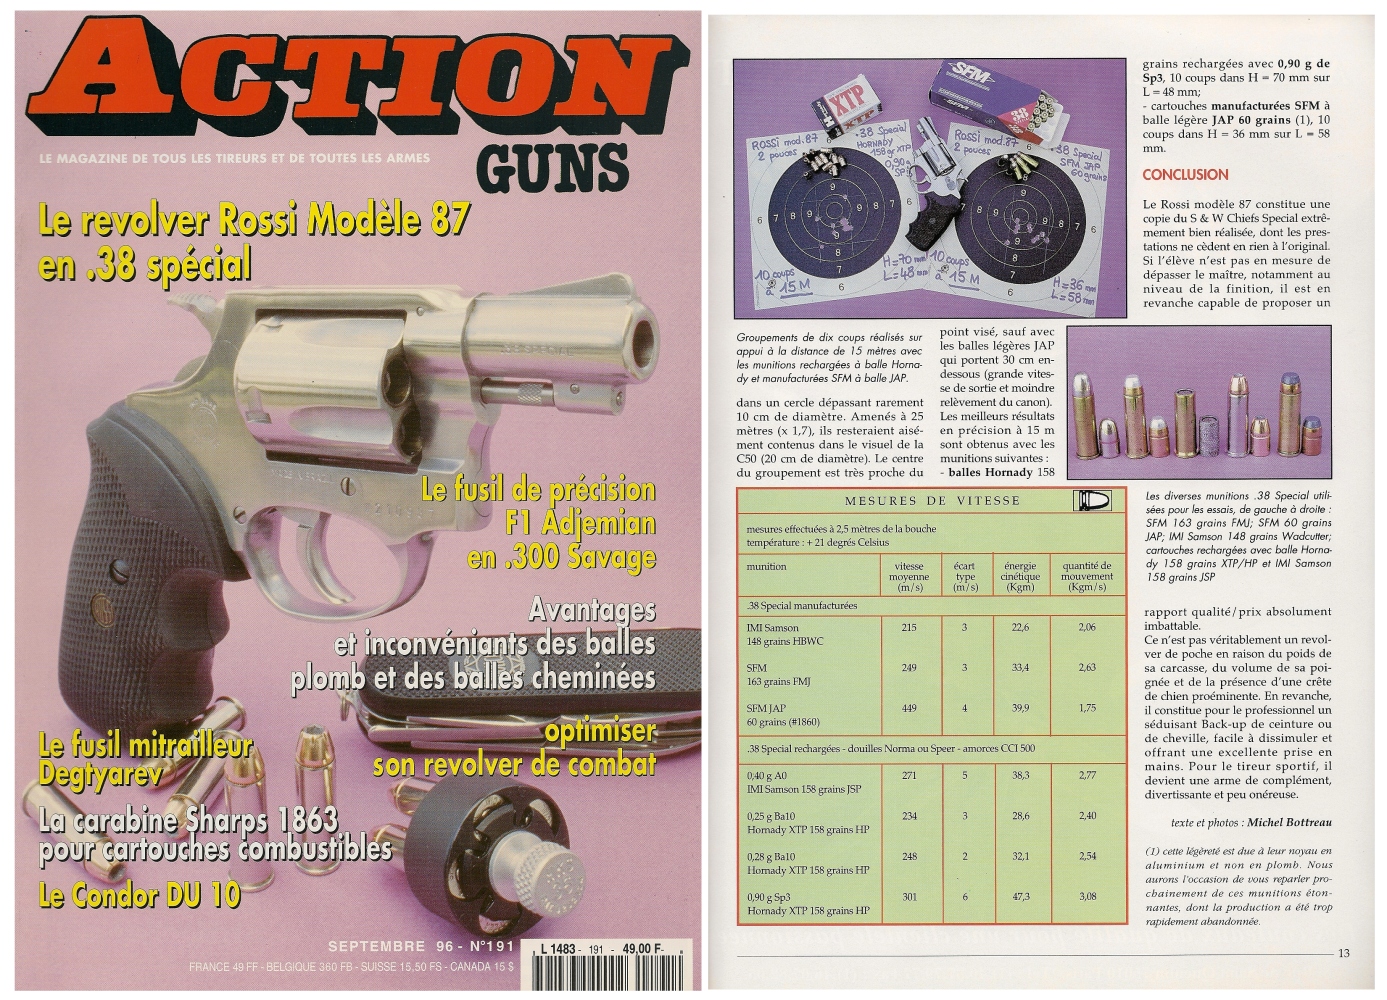 Le banc d’essai du revolver Rossi de calibre .38 Special a été publié sur 6 pages dans le magazine Action Guns n° 191 (septembre 1996).